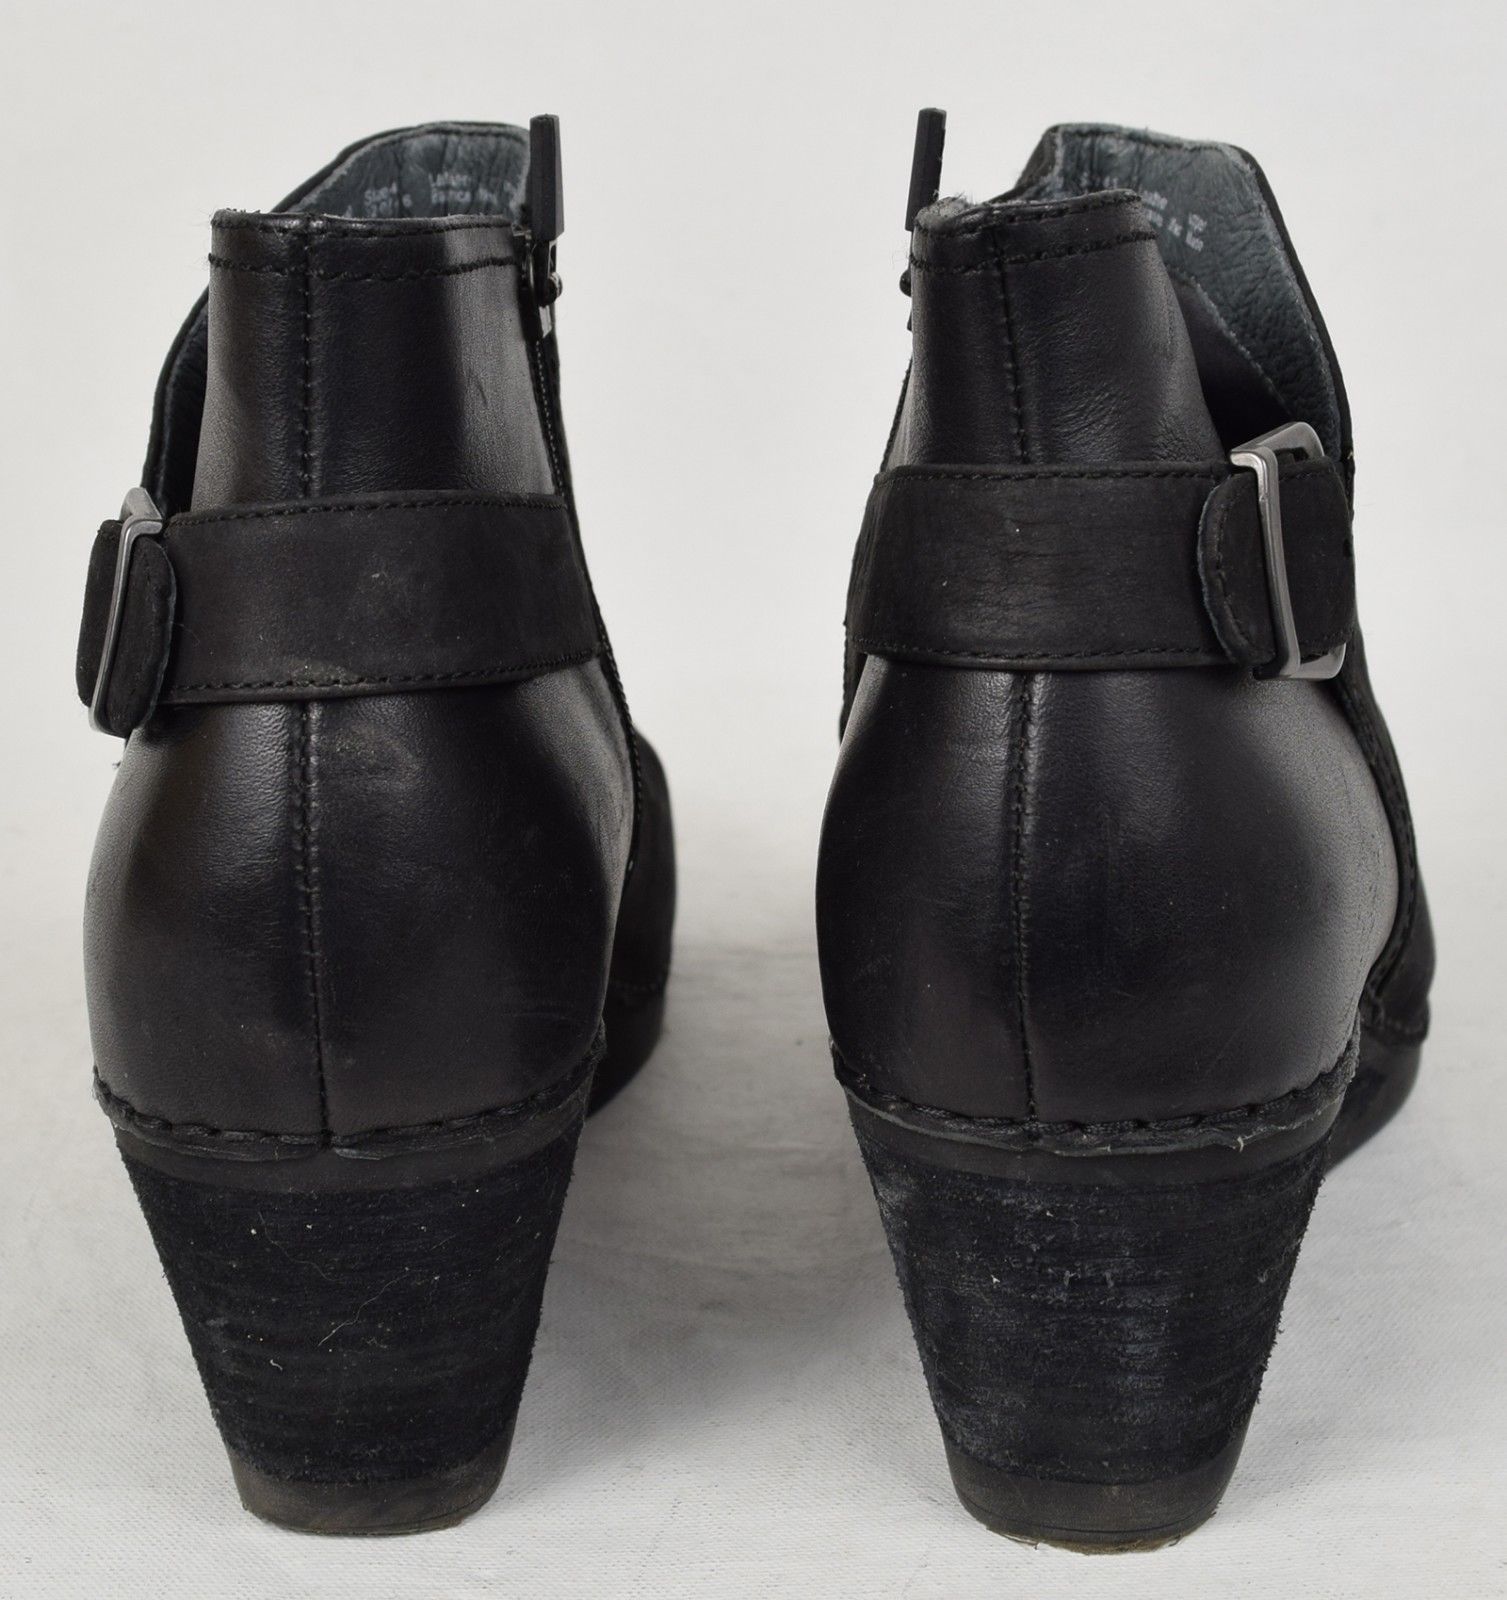 dansko women's camryn winter boot